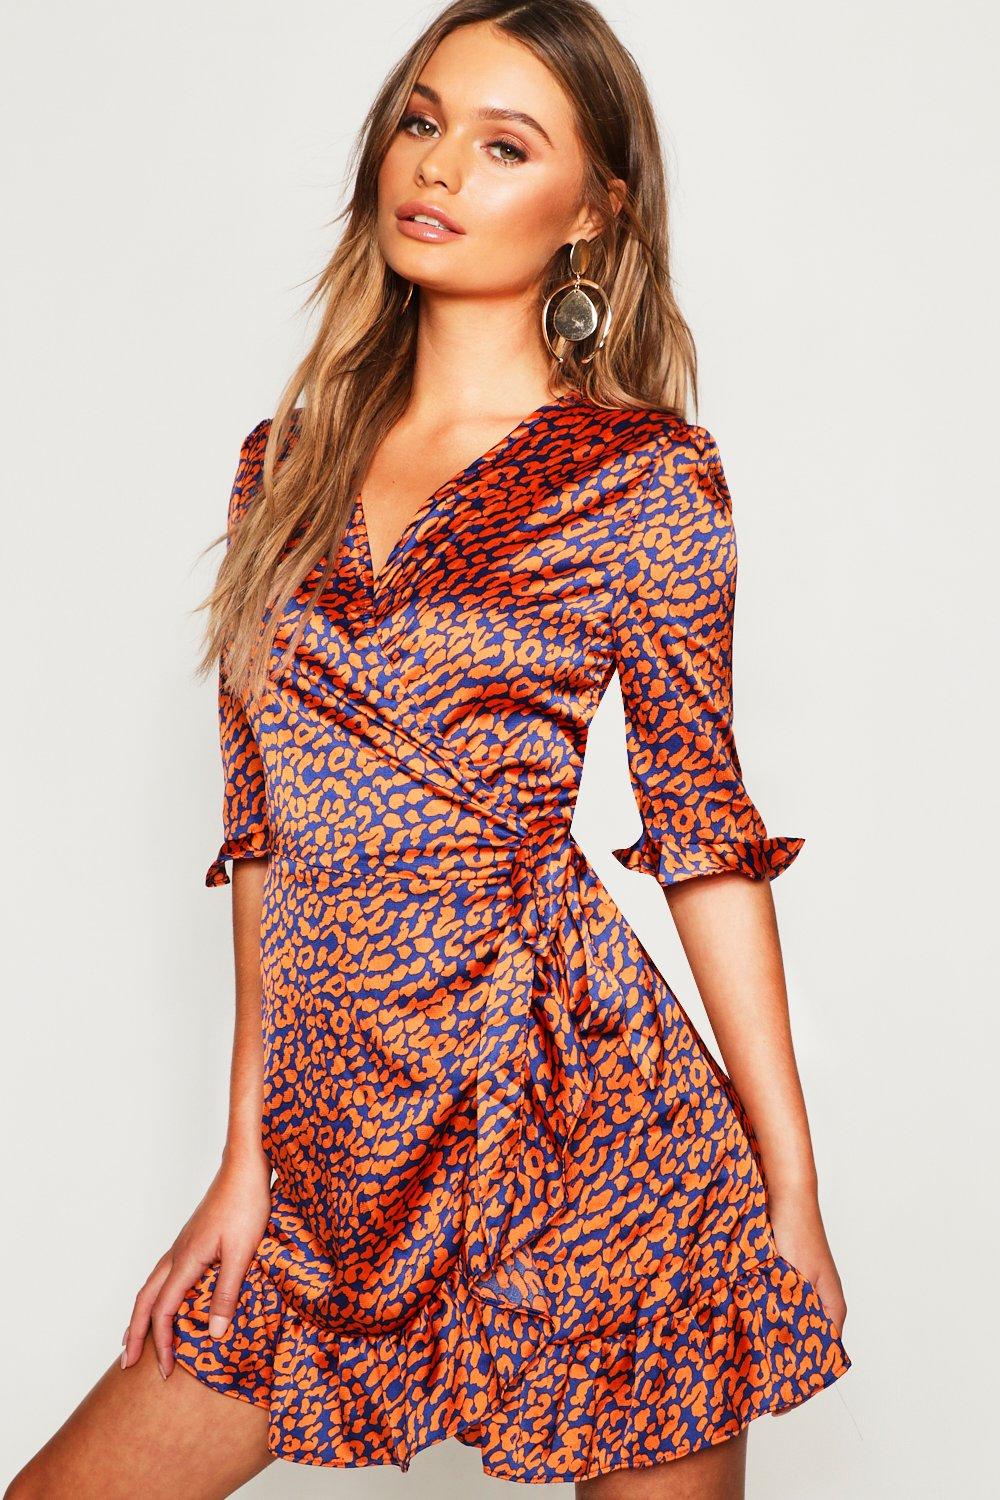 boohoo red leopard print dress